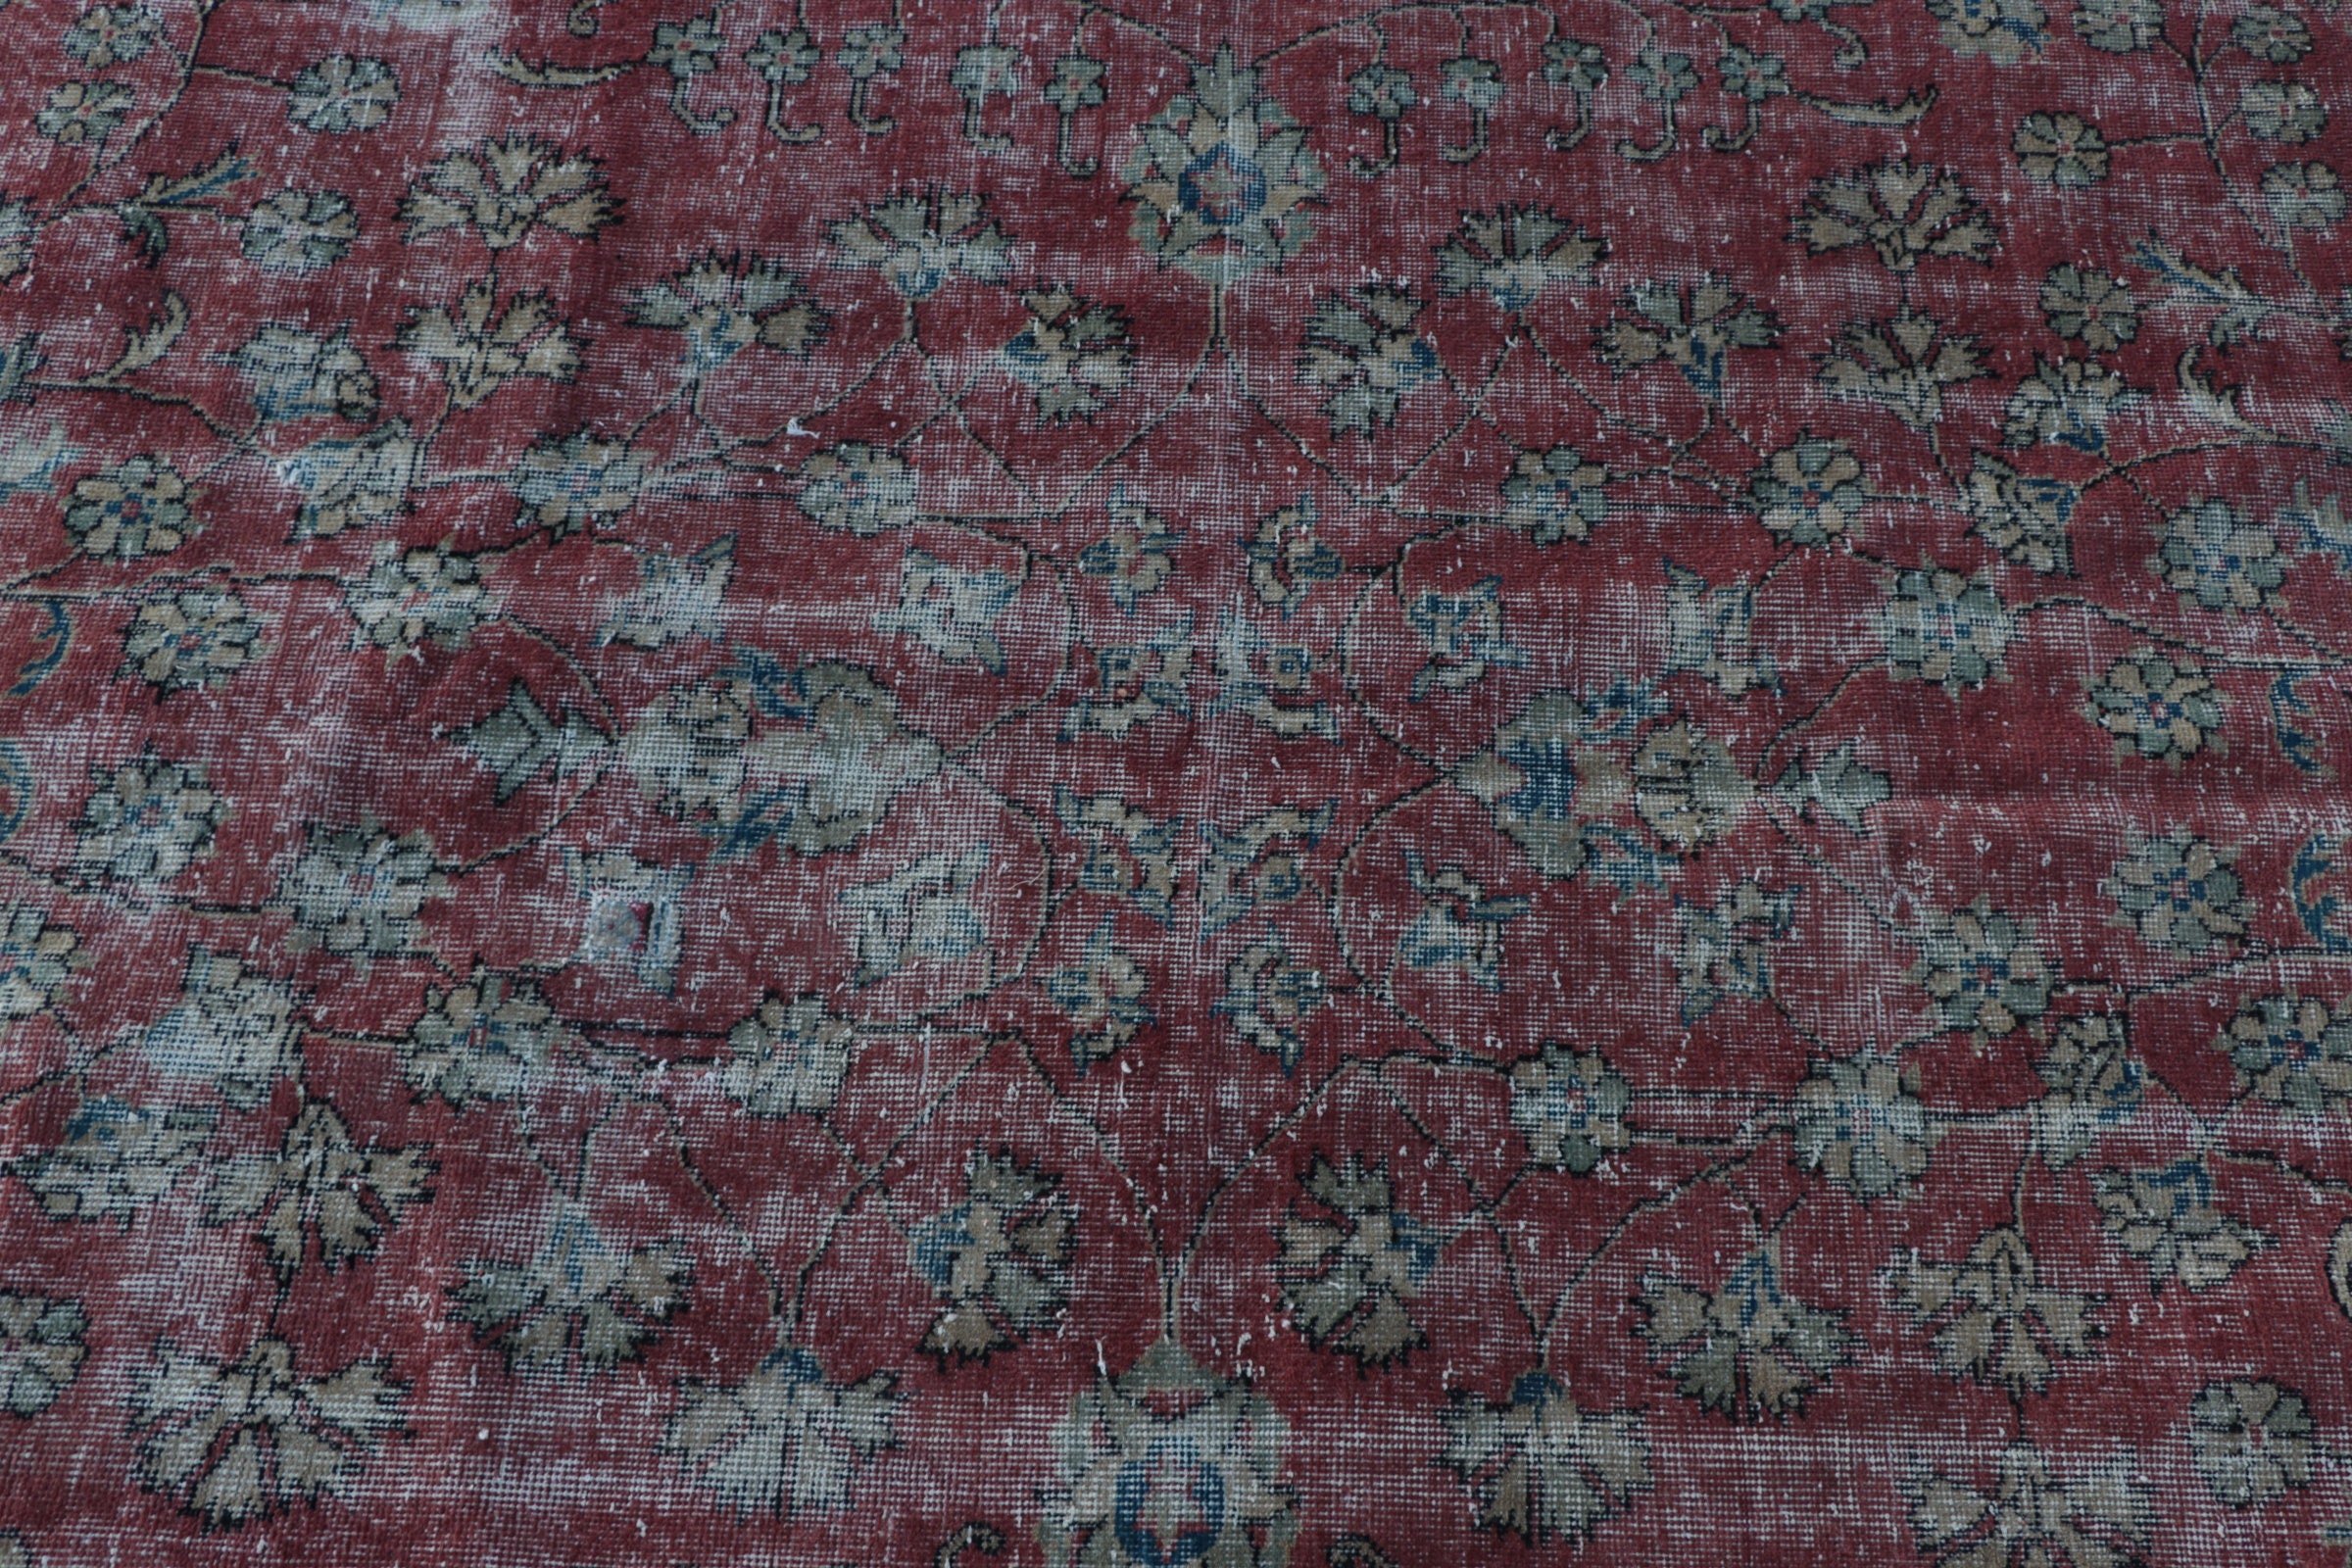 Red Moroccan Rug, Rugs for Floor, Bedroom Rug, Vintage Rug, Living Room Rugs, Home Decor Rugs, Wool Rugs, Turkish Rugs, 4.1x8 ft Area Rugs